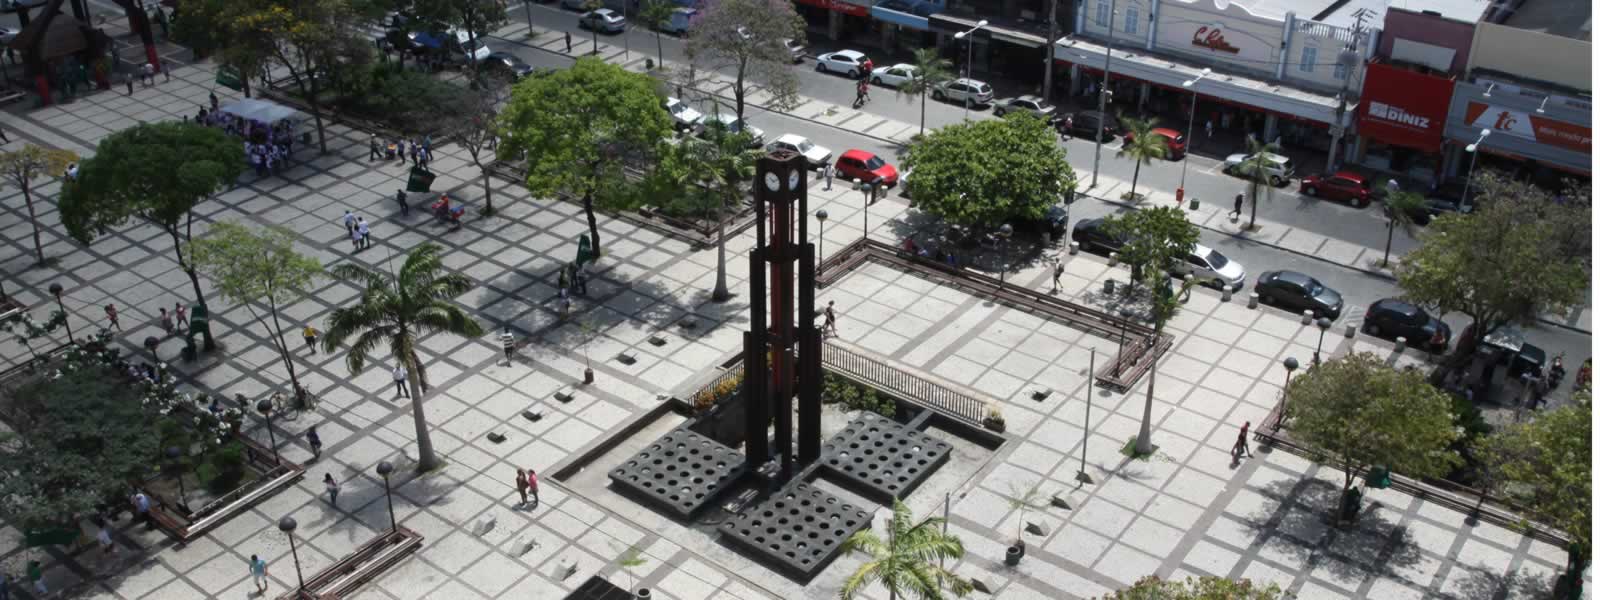 ícone da Cidade, a Praça do Ferreira representa um pouco da economia de Fortaleza